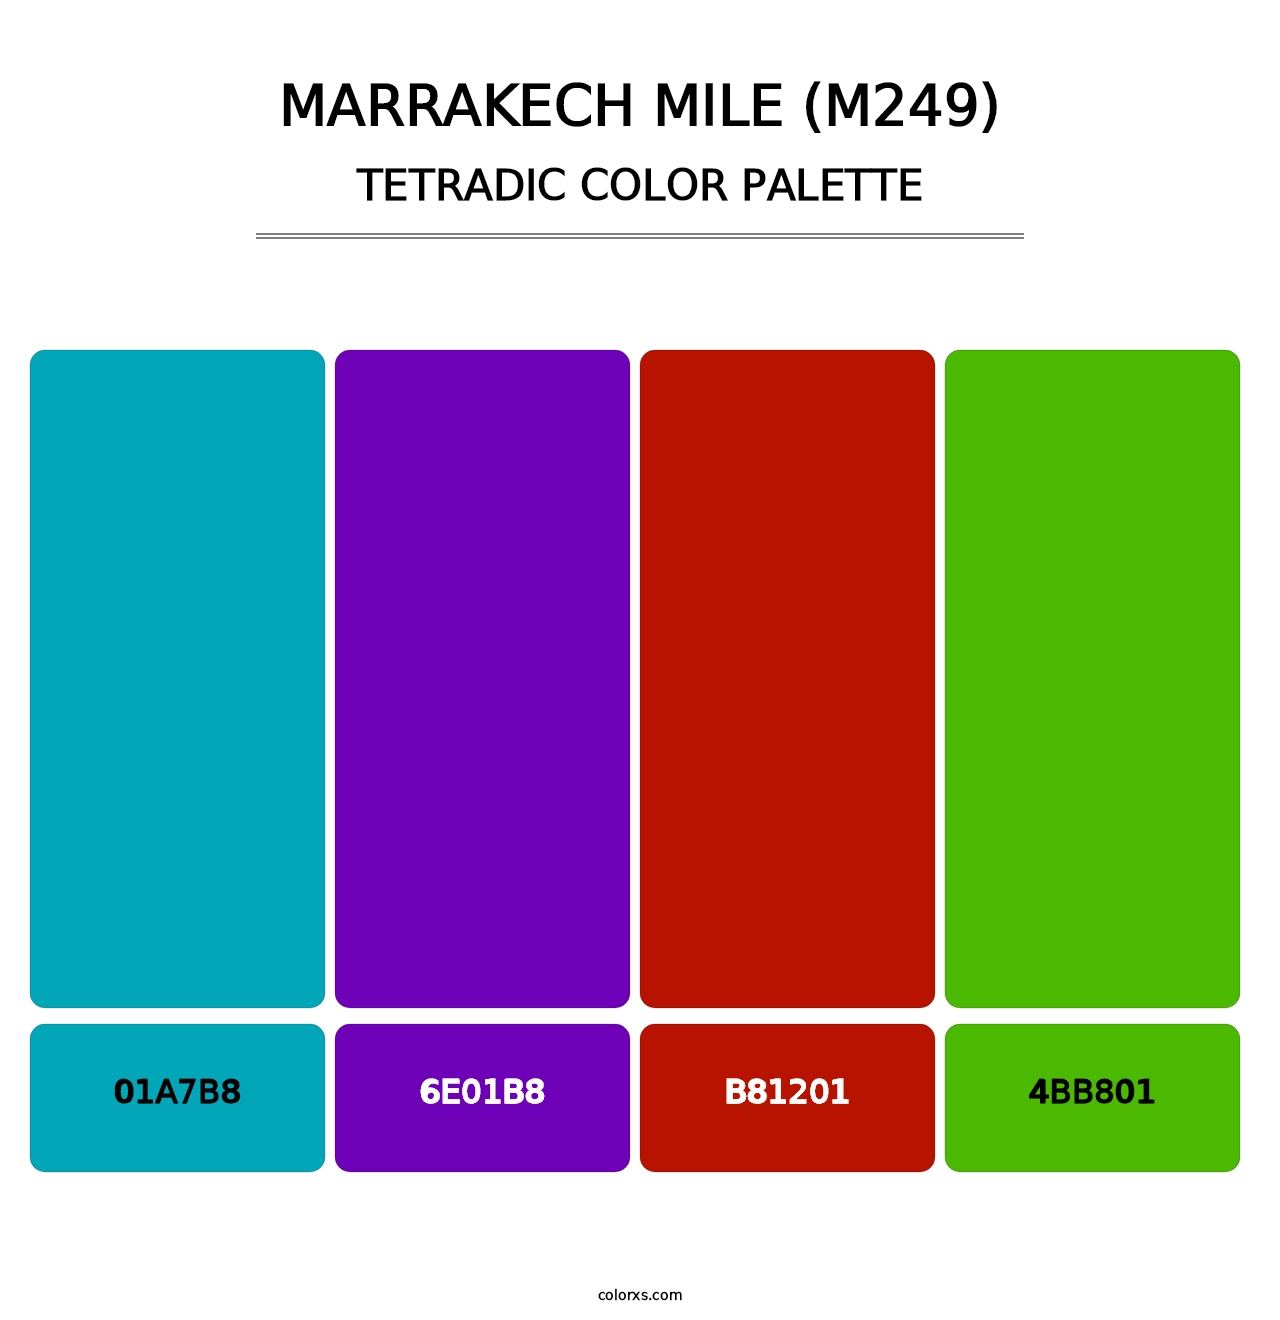 Marrakech Mile (M249) - Tetradic Color Palette